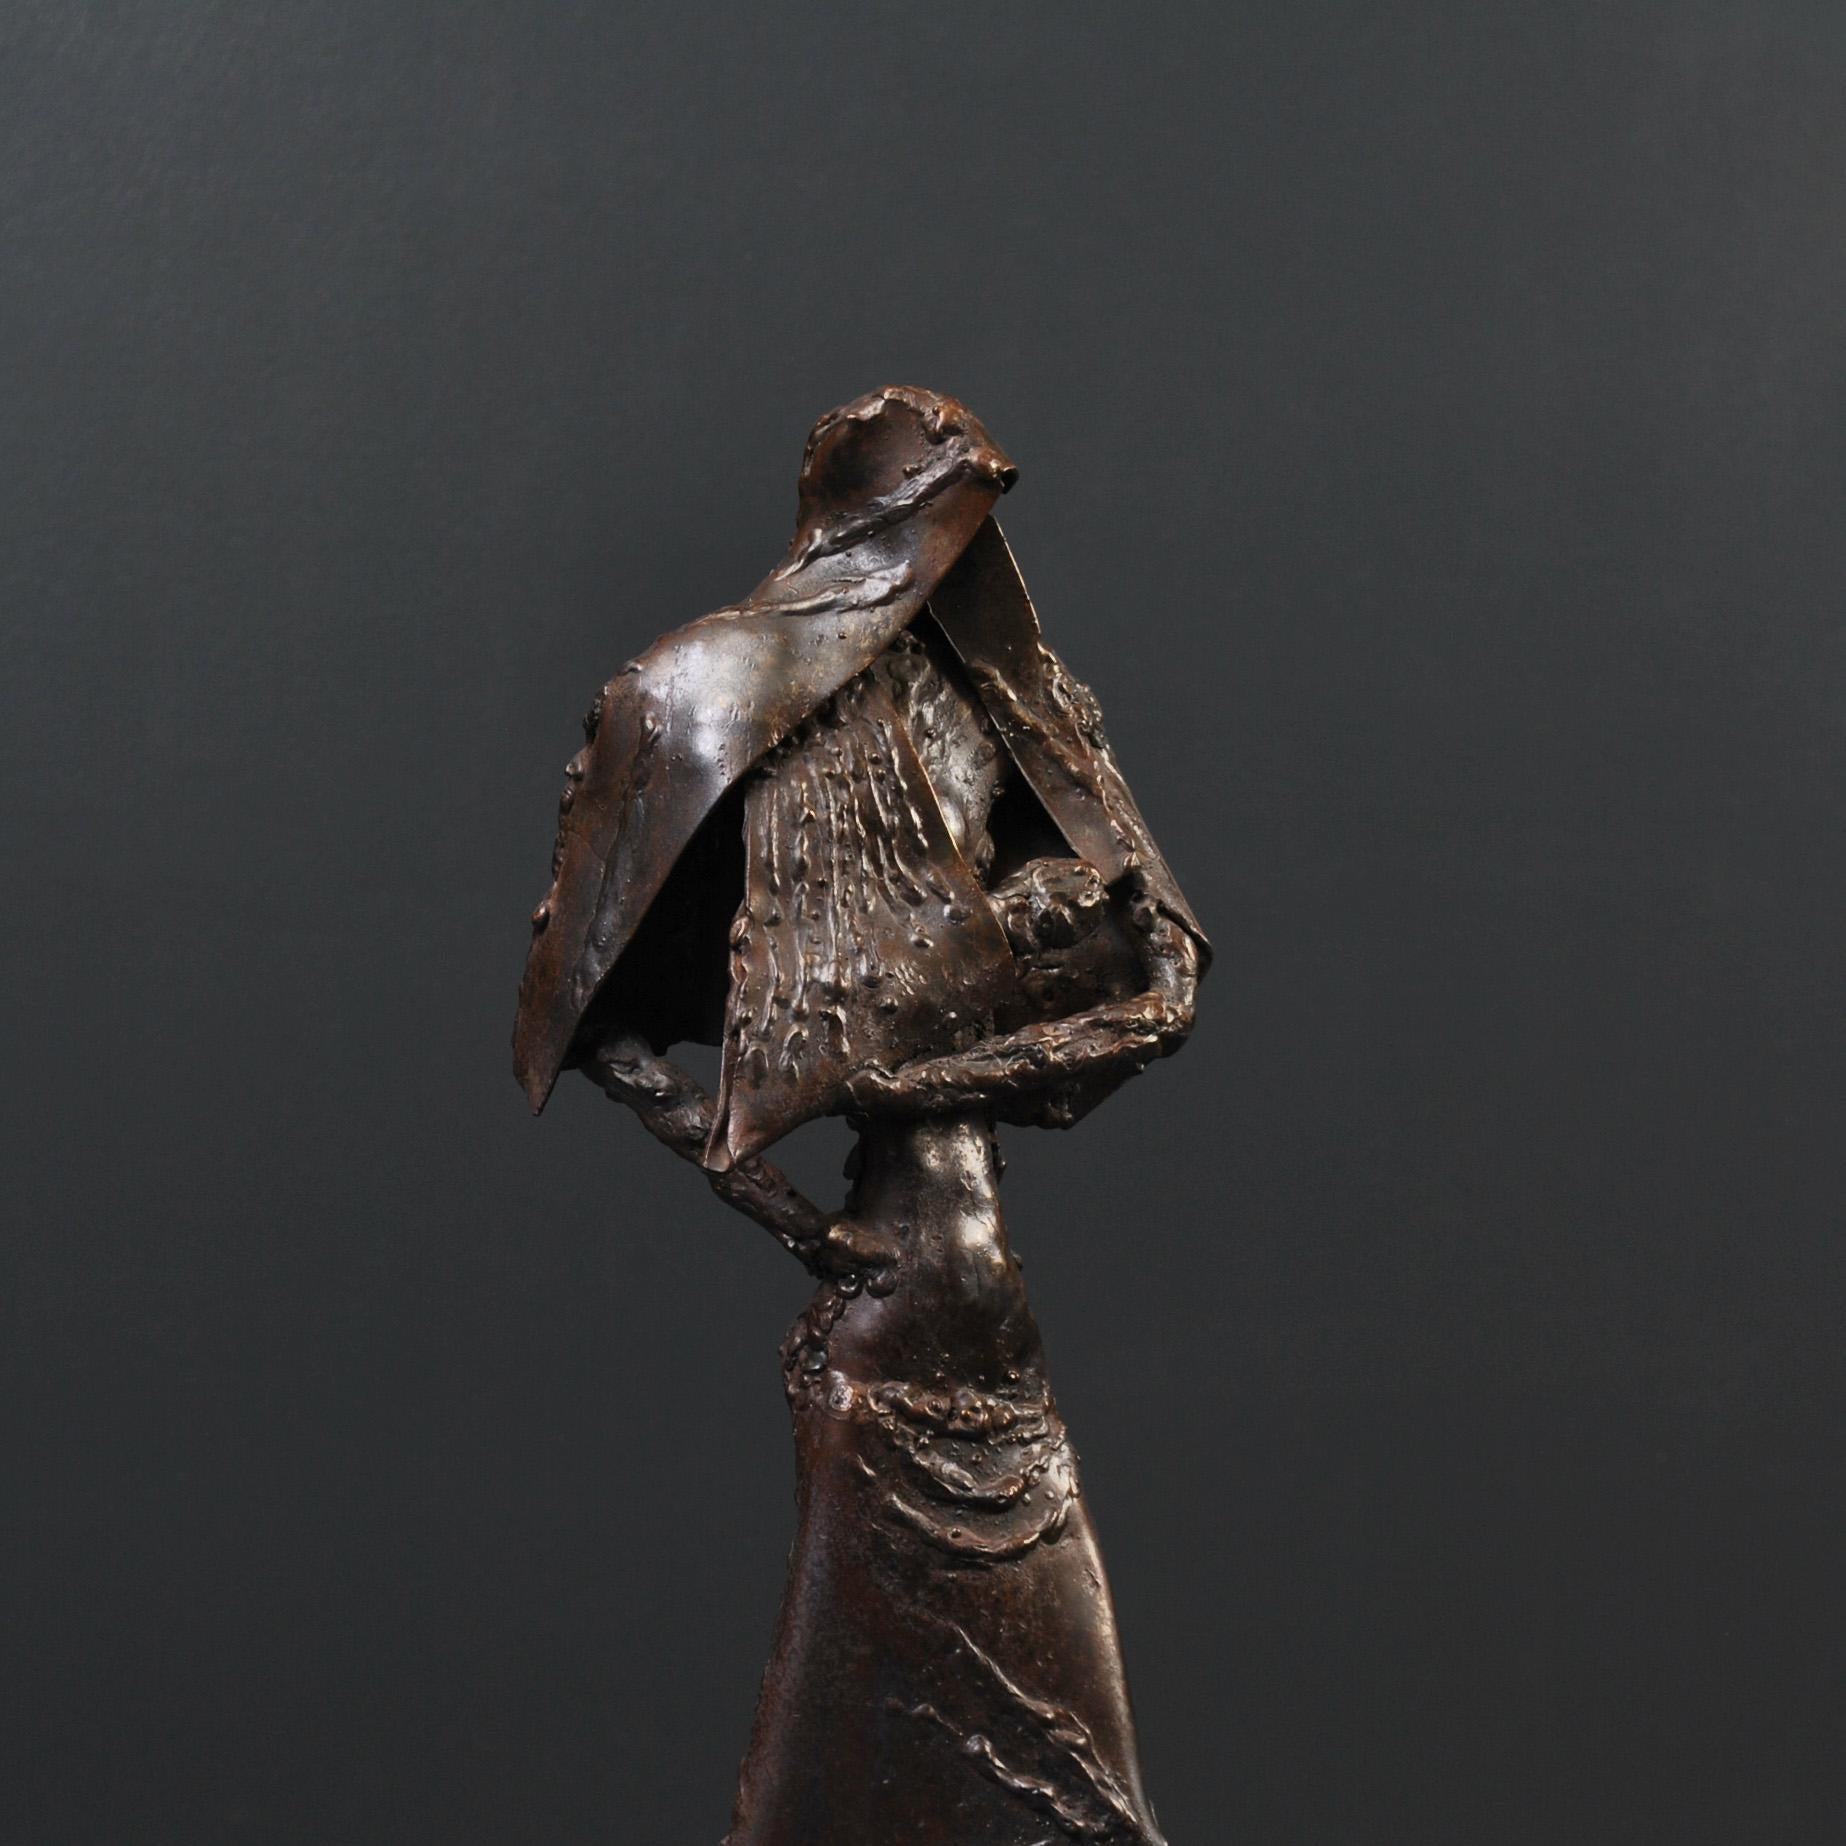 Une sculpture anglaise datant du milieu du 20e siècle représentant une femme et un bébé. Créée en acier avec des soudures et des techniques de construction métallique sur une base en marbre massif.
Une œuvre d'art plutôt inhabituelle, avec un